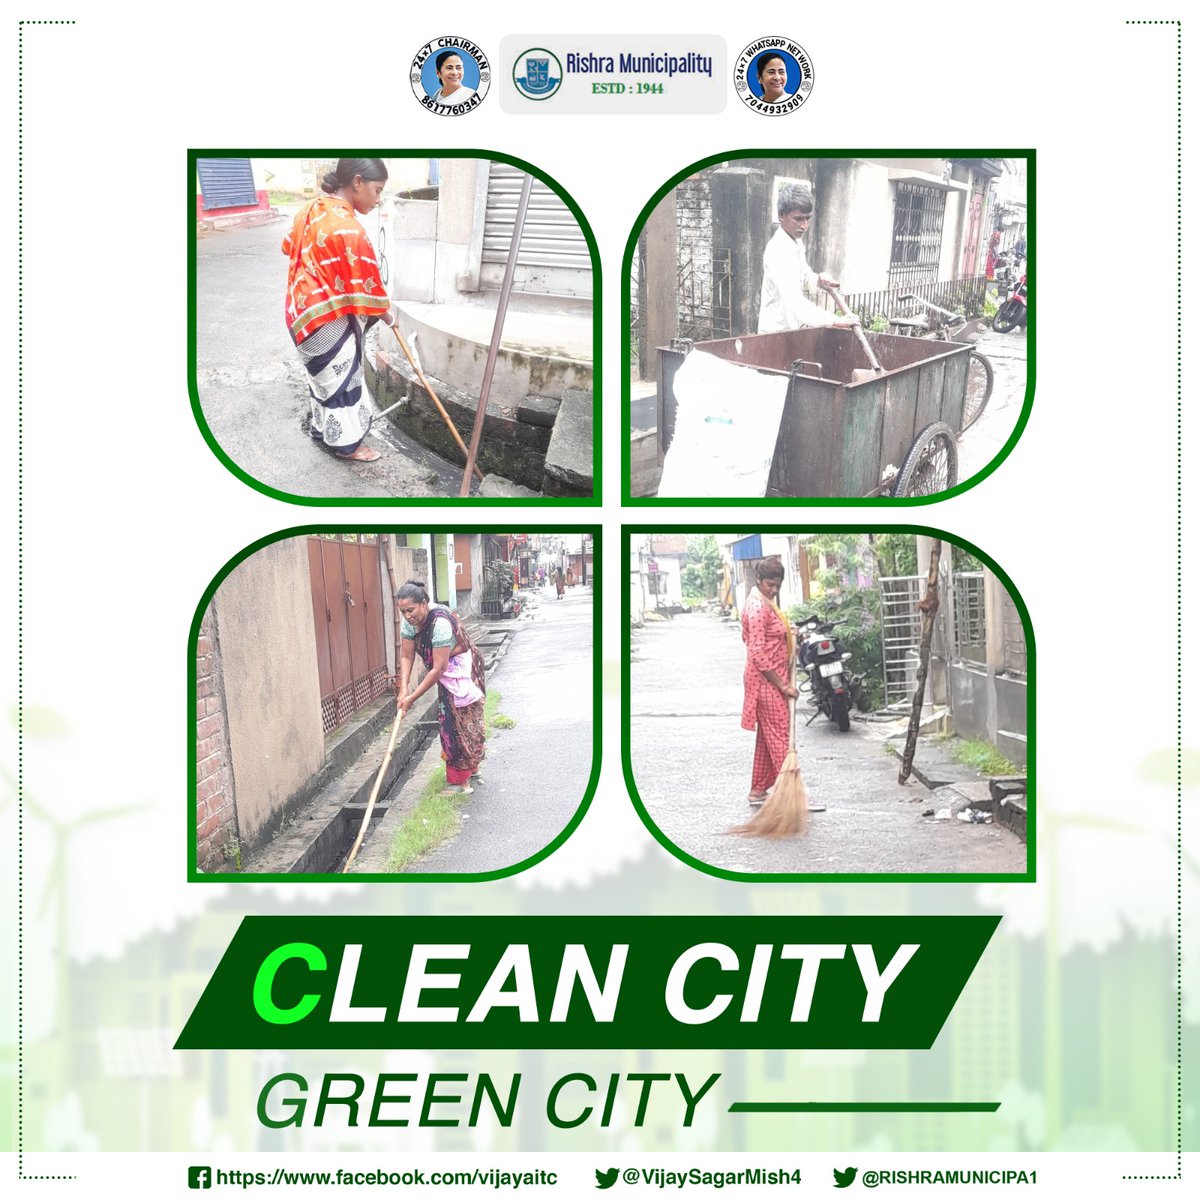 Clean Rishra, Happy Citizens Rishra Municipality's mission #cleancitygreencity #cleanandgreen #ecocity #cleanenvironment #gogreen #greencommunity #cleanliving #rishra #gorbersohorrishra @RISHRAMUNICIPA1 @wbdhfw @MamataOfficial @abhishekaitc